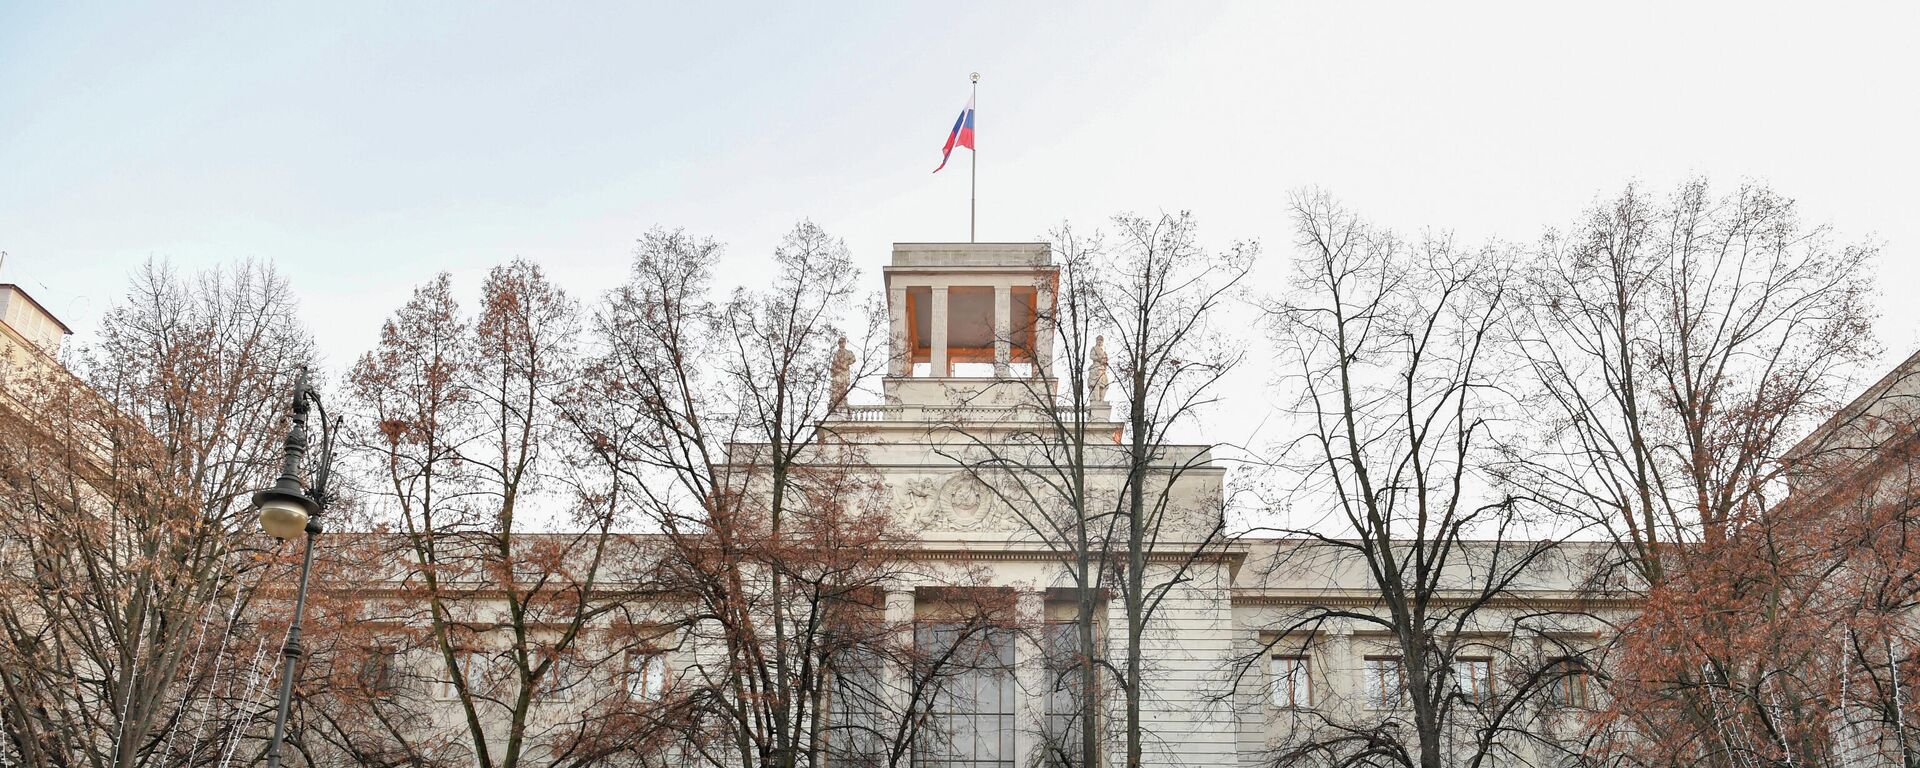 Руска амбасада у Берлину - Sputnik Србија, 1920, 05.11.2021